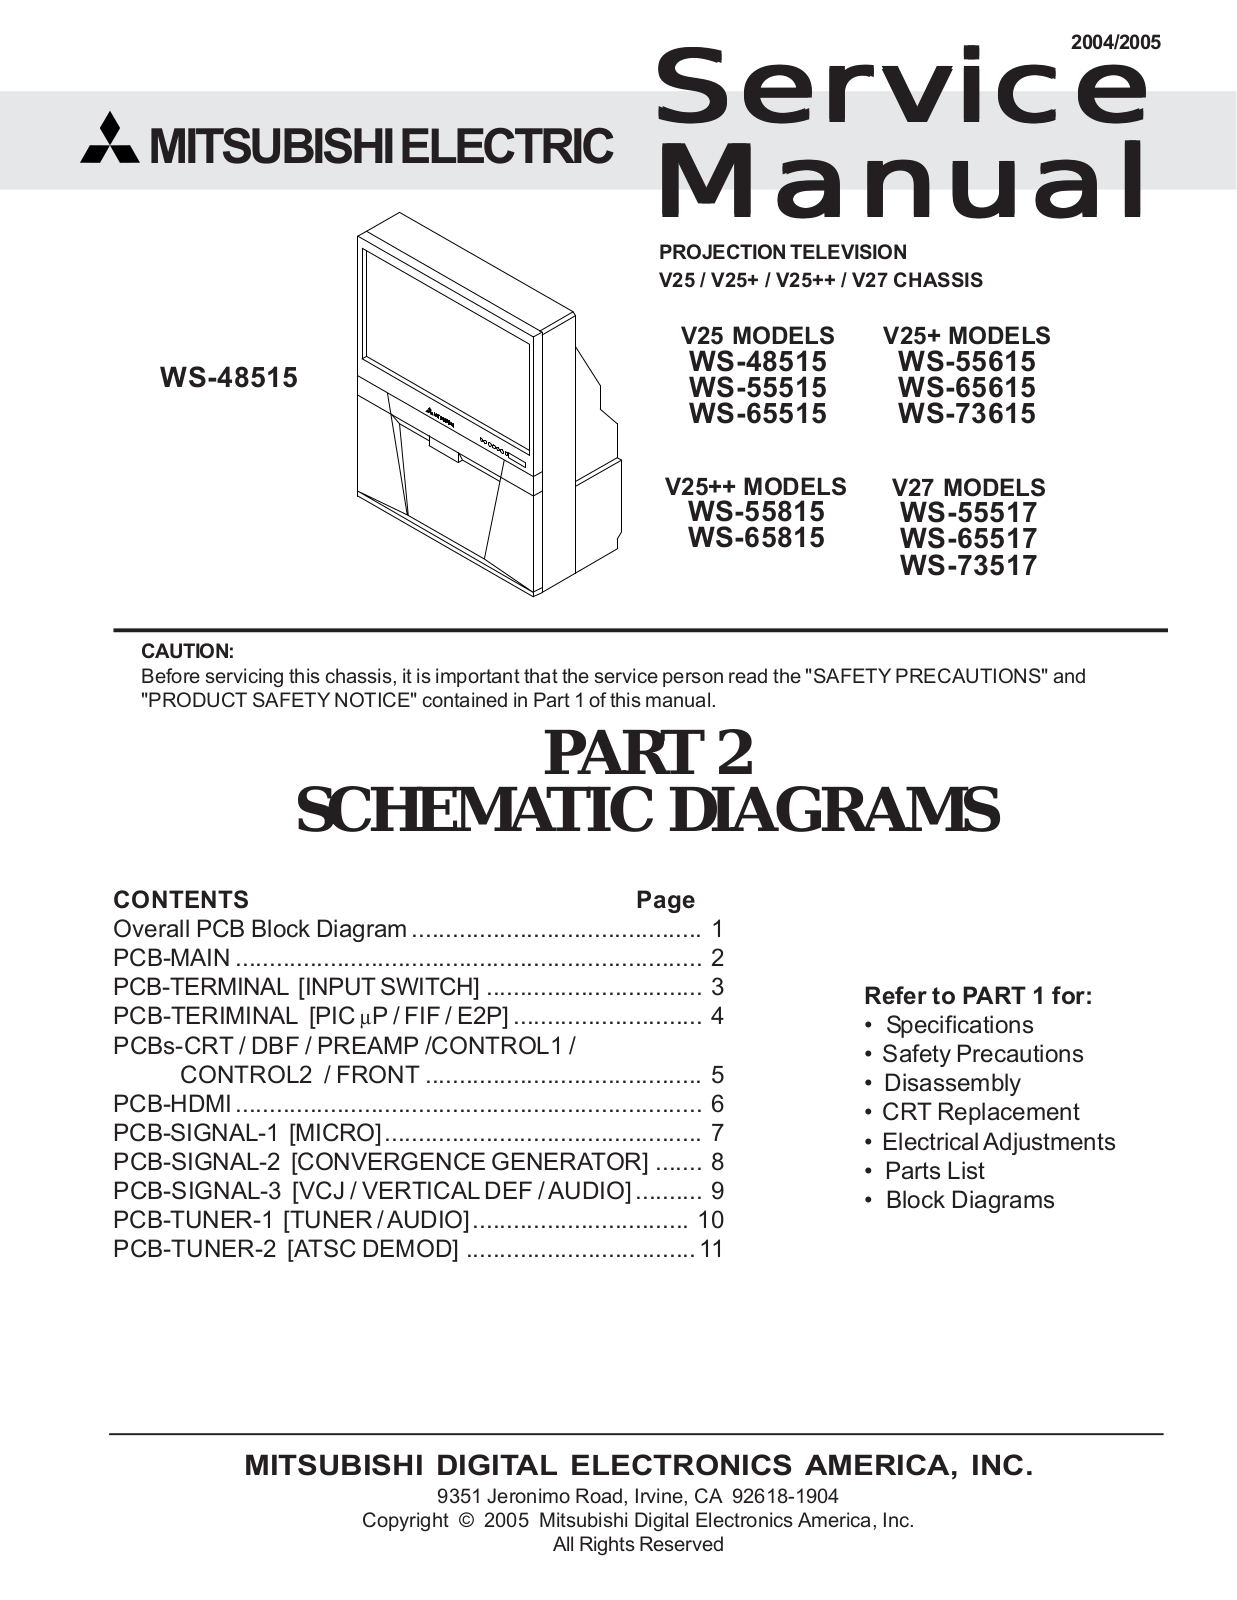 Mitsubishi WS-73517, WS-55517, V27, WS-65517, WS-65815 Service manual